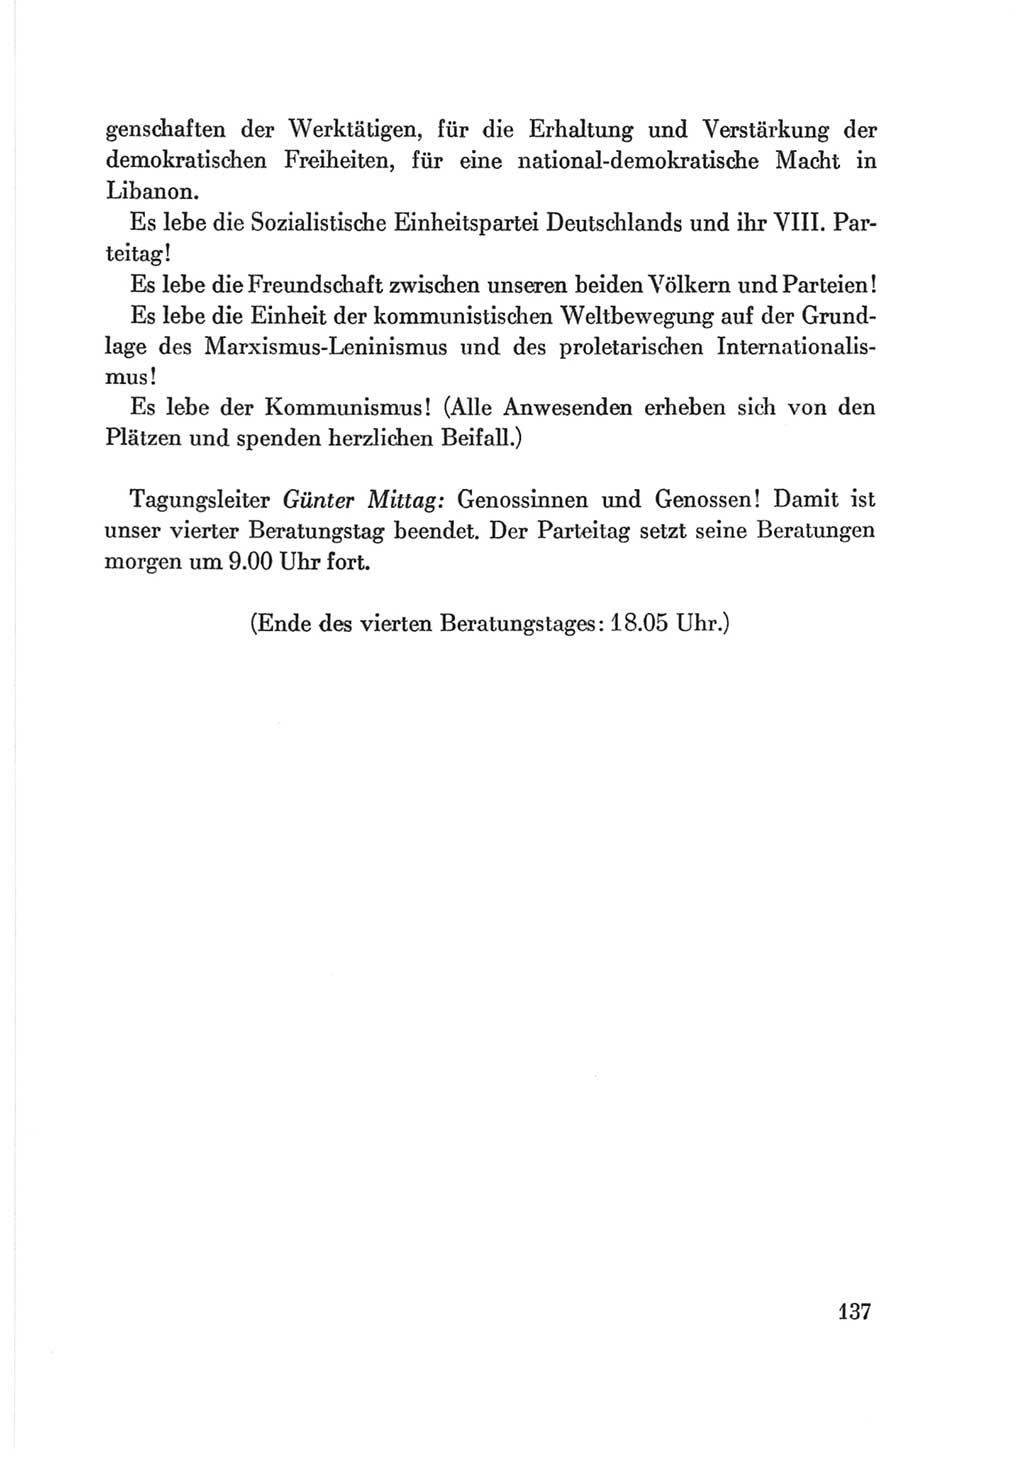 Protokoll der Verhandlungen des Ⅷ. Parteitages der Sozialistischen Einheitspartei Deutschlands (SED) [Deutsche Demokratische Republik (DDR)] 1971, Band 2, Seite 137 (Prot. Verh. Ⅷ. PT SED DDR 1971, Bd. 2, S. 137)